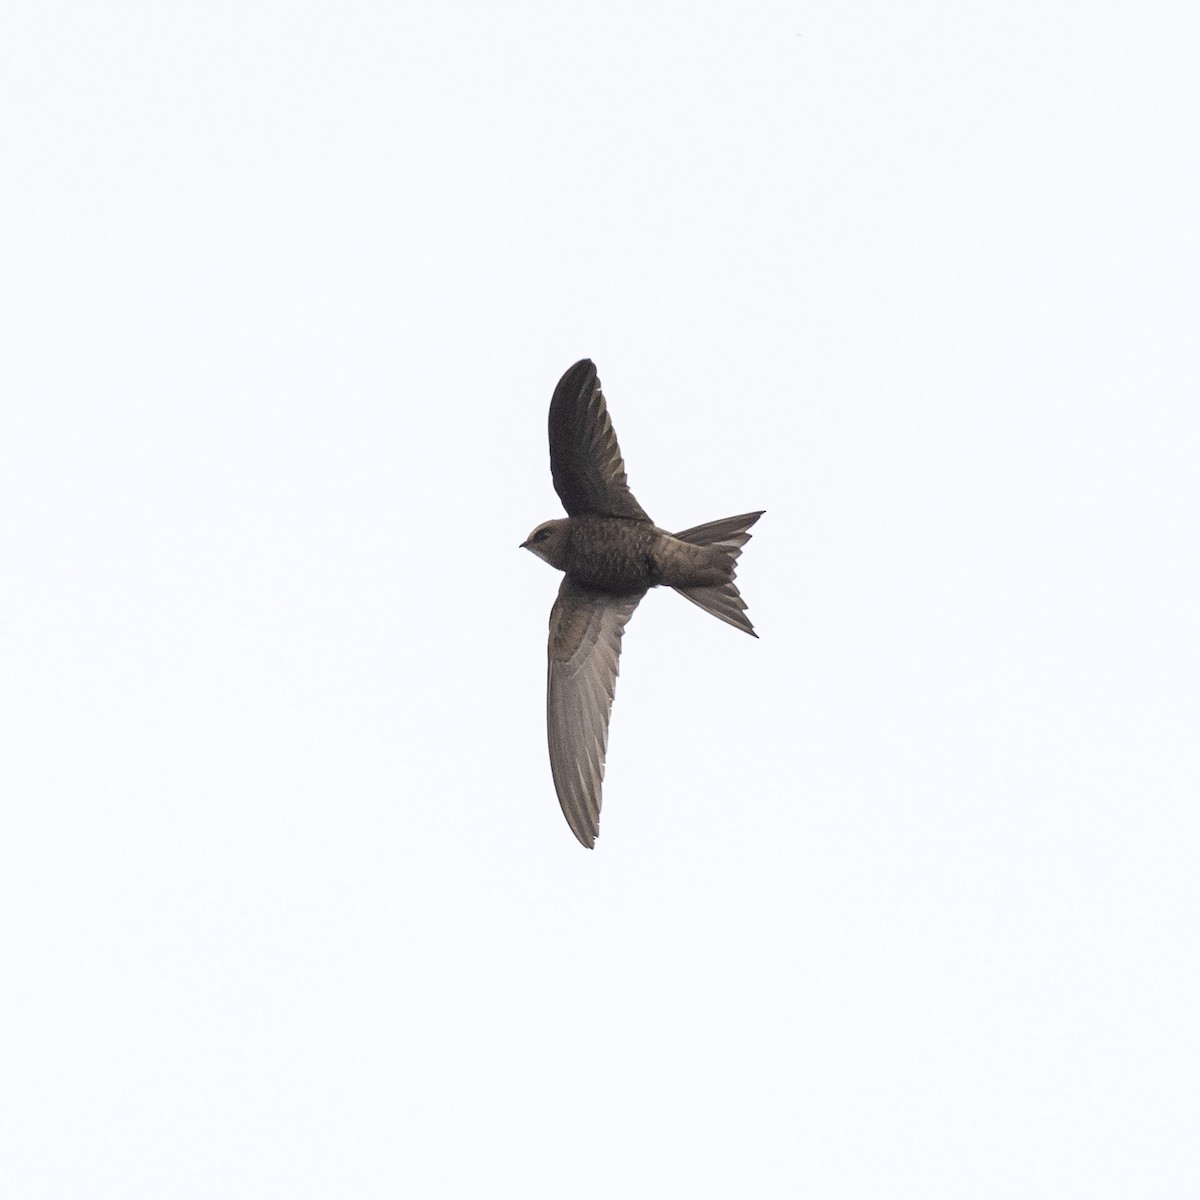 Pallid Swift - The Urban Birder